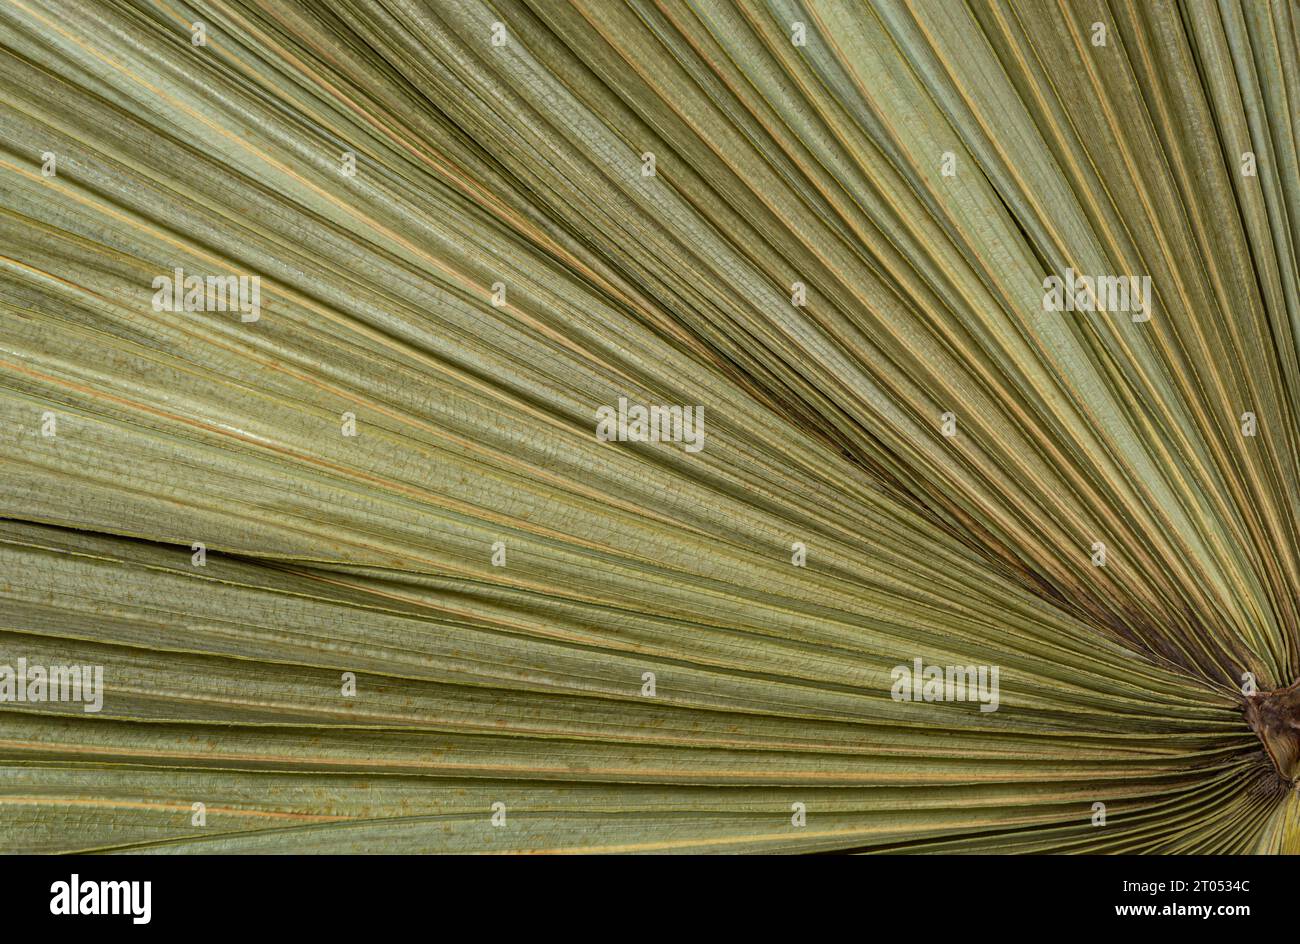 foglie di palma verdi che divergono radialmente, sfondo. Foto di alta qualità Foto Stock